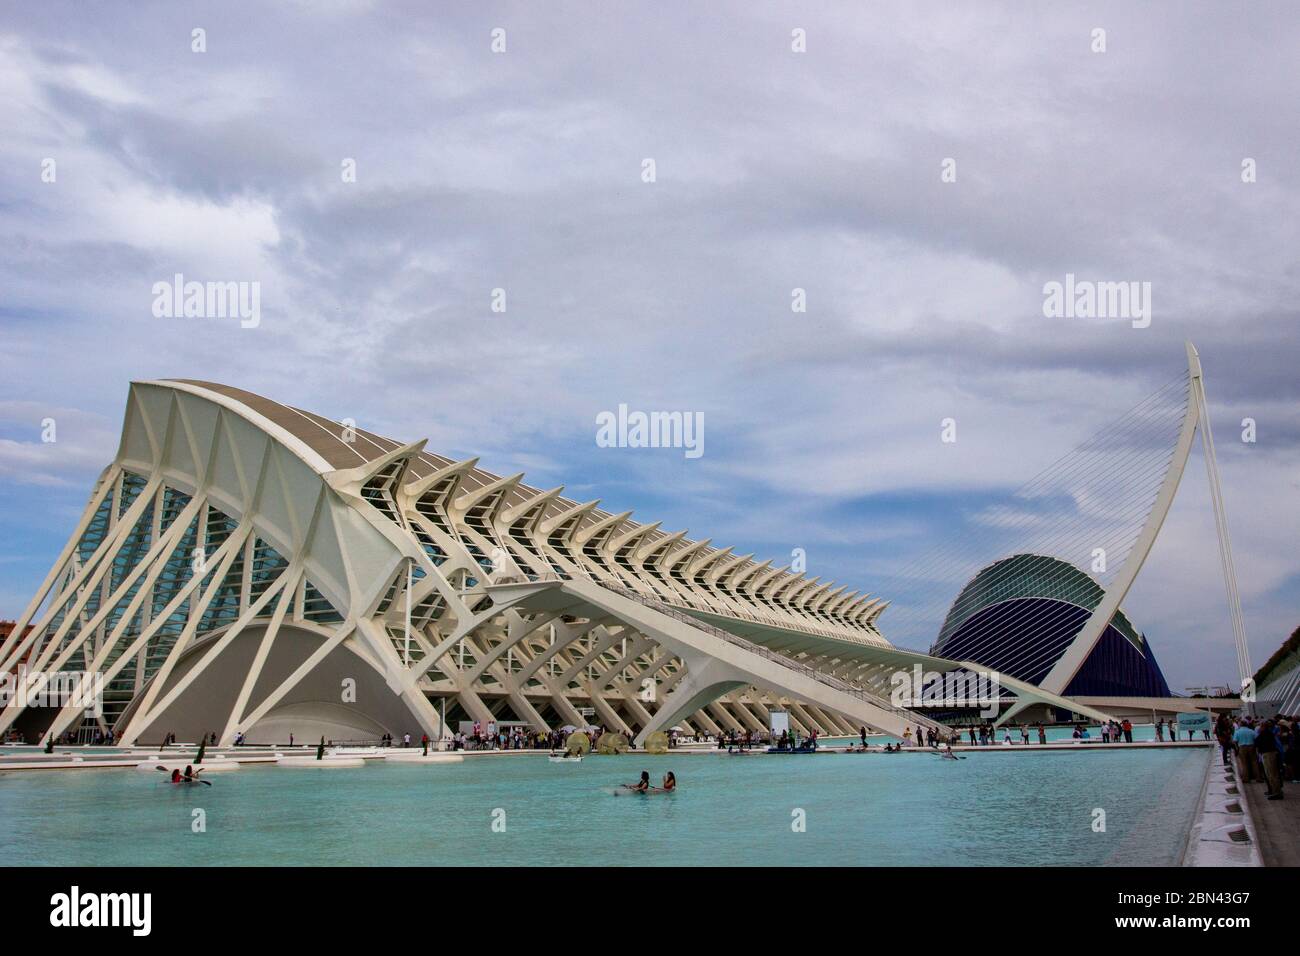 The Museo de las Ciencias Príncipe Felipe, designed by Santiago Calatrava, with the Assut de l'Or Bridge in the background, in Valencia, Spain Stock Photo